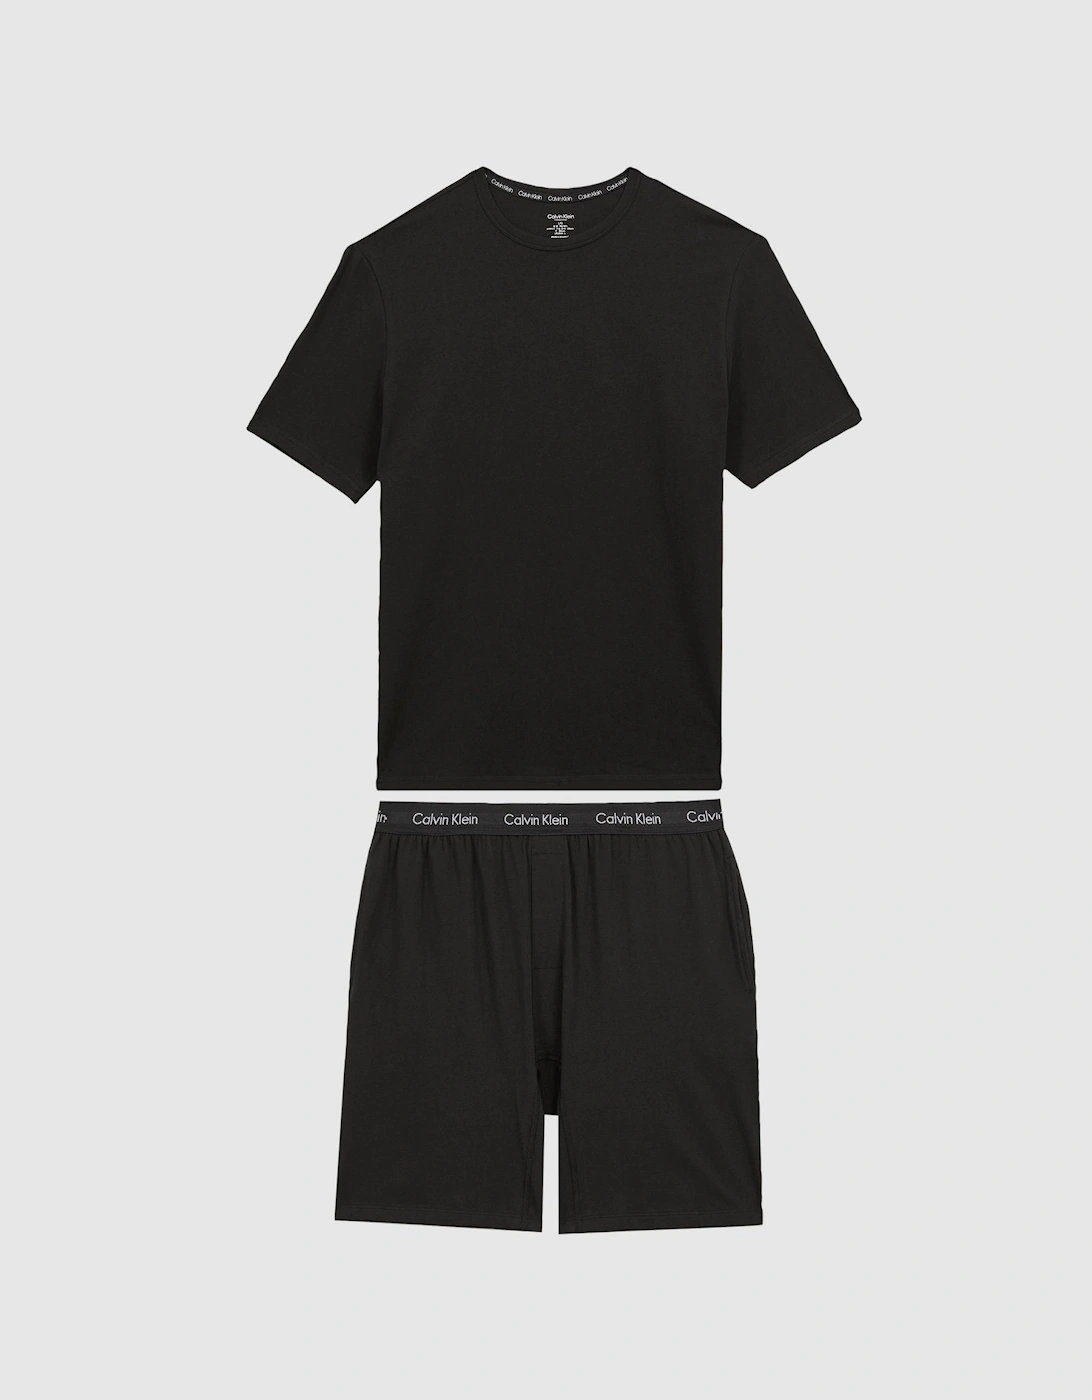 Calvin Klein Underwear Shorts and T-Shirt Set, 2 of 1